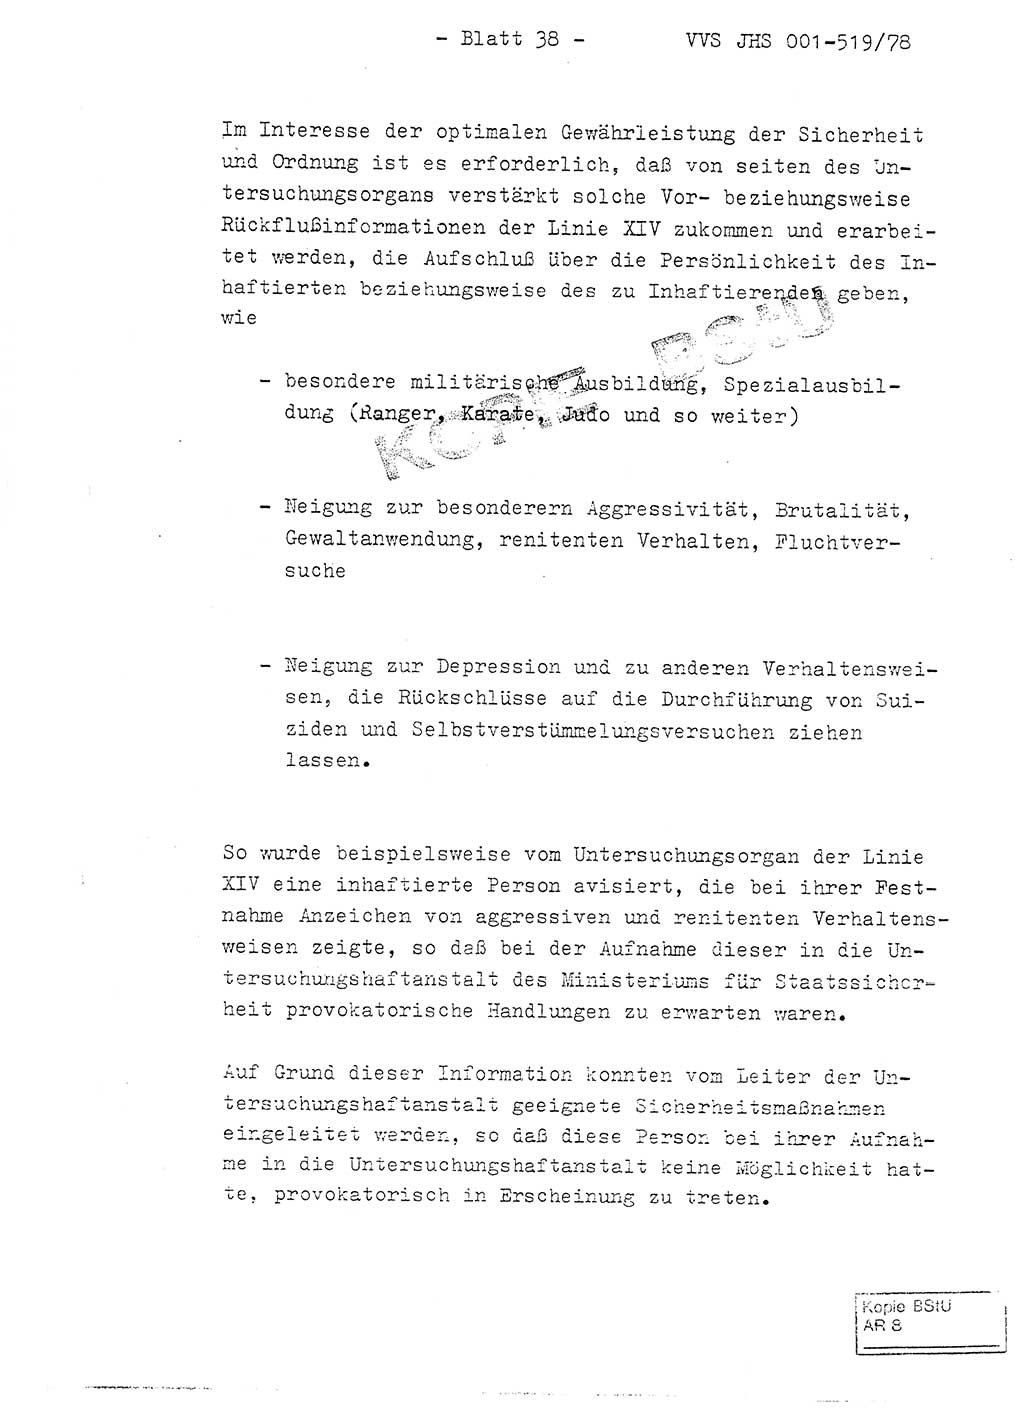 Fachschulabschlußarbeit Hauptmann Alfons Lützelberger (Abt. ⅩⅣ), Ministerium für Staatssicherheit (MfS) [Deutsche Demokratische Republik (DDR)], Juristische Hochschule (JHS), Vertrauliche Verschlußsache (VVS) 001-519/78, Potsdam 1978, Blatt 38 (FS-Abschl.-Arb. MfS DDR JHS VVS 001-519/78 1978, Bl. 38)